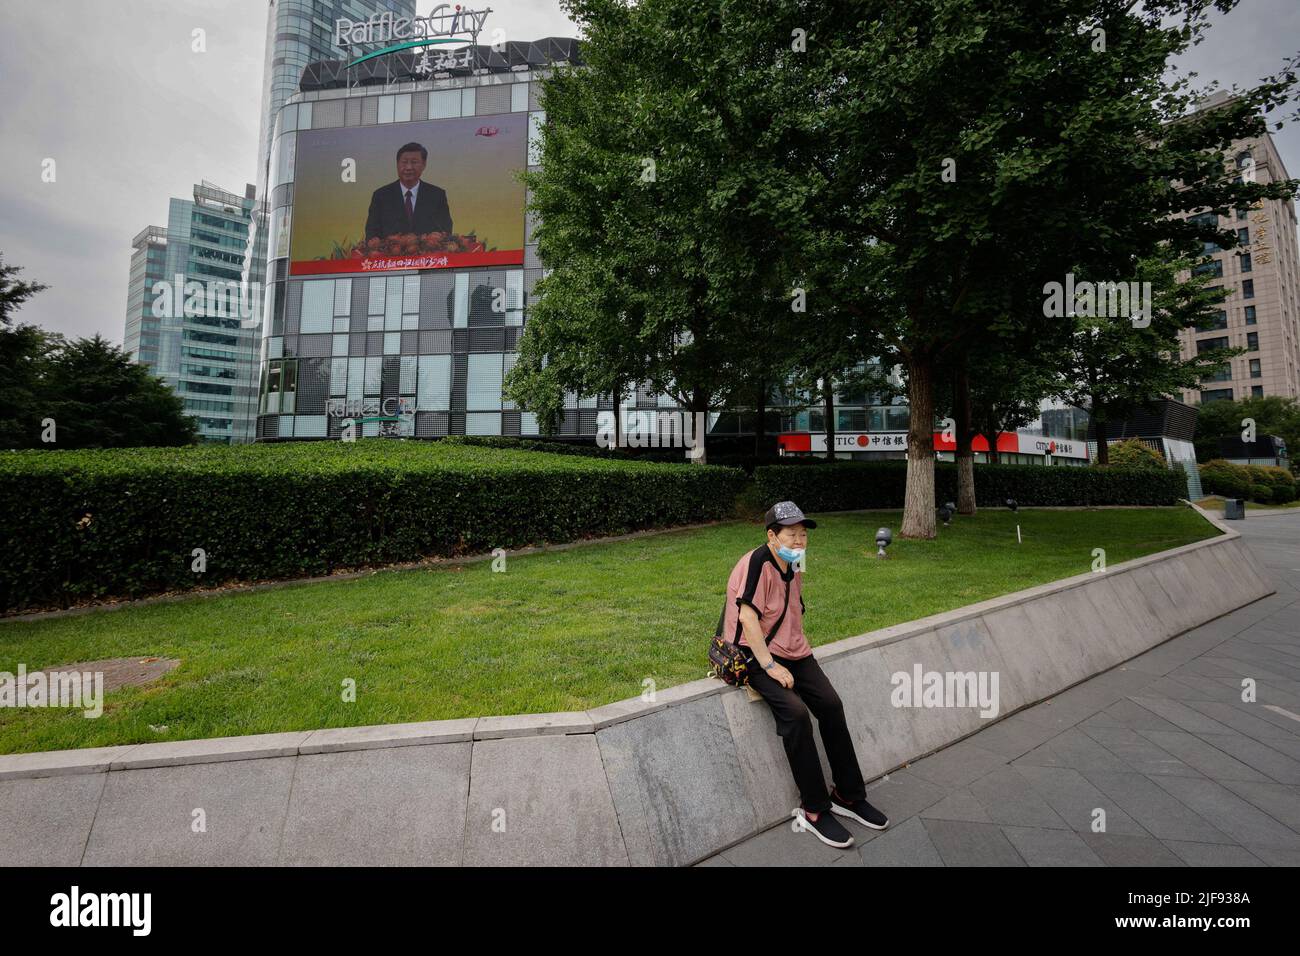 Un écran diffuse le discours du président chinois Xi Jinping lors d'une cérémonie d'inauguration du nouveau gouvernement de Hong Kong dans un centre commercial de Pékin, en Chine, au 1 juillet 2022, à l'occasion du 25th anniversaire de la remise de la ville de Grande-Bretagne à la Chine. REUTERS/Thomas Peter Banque D'Images